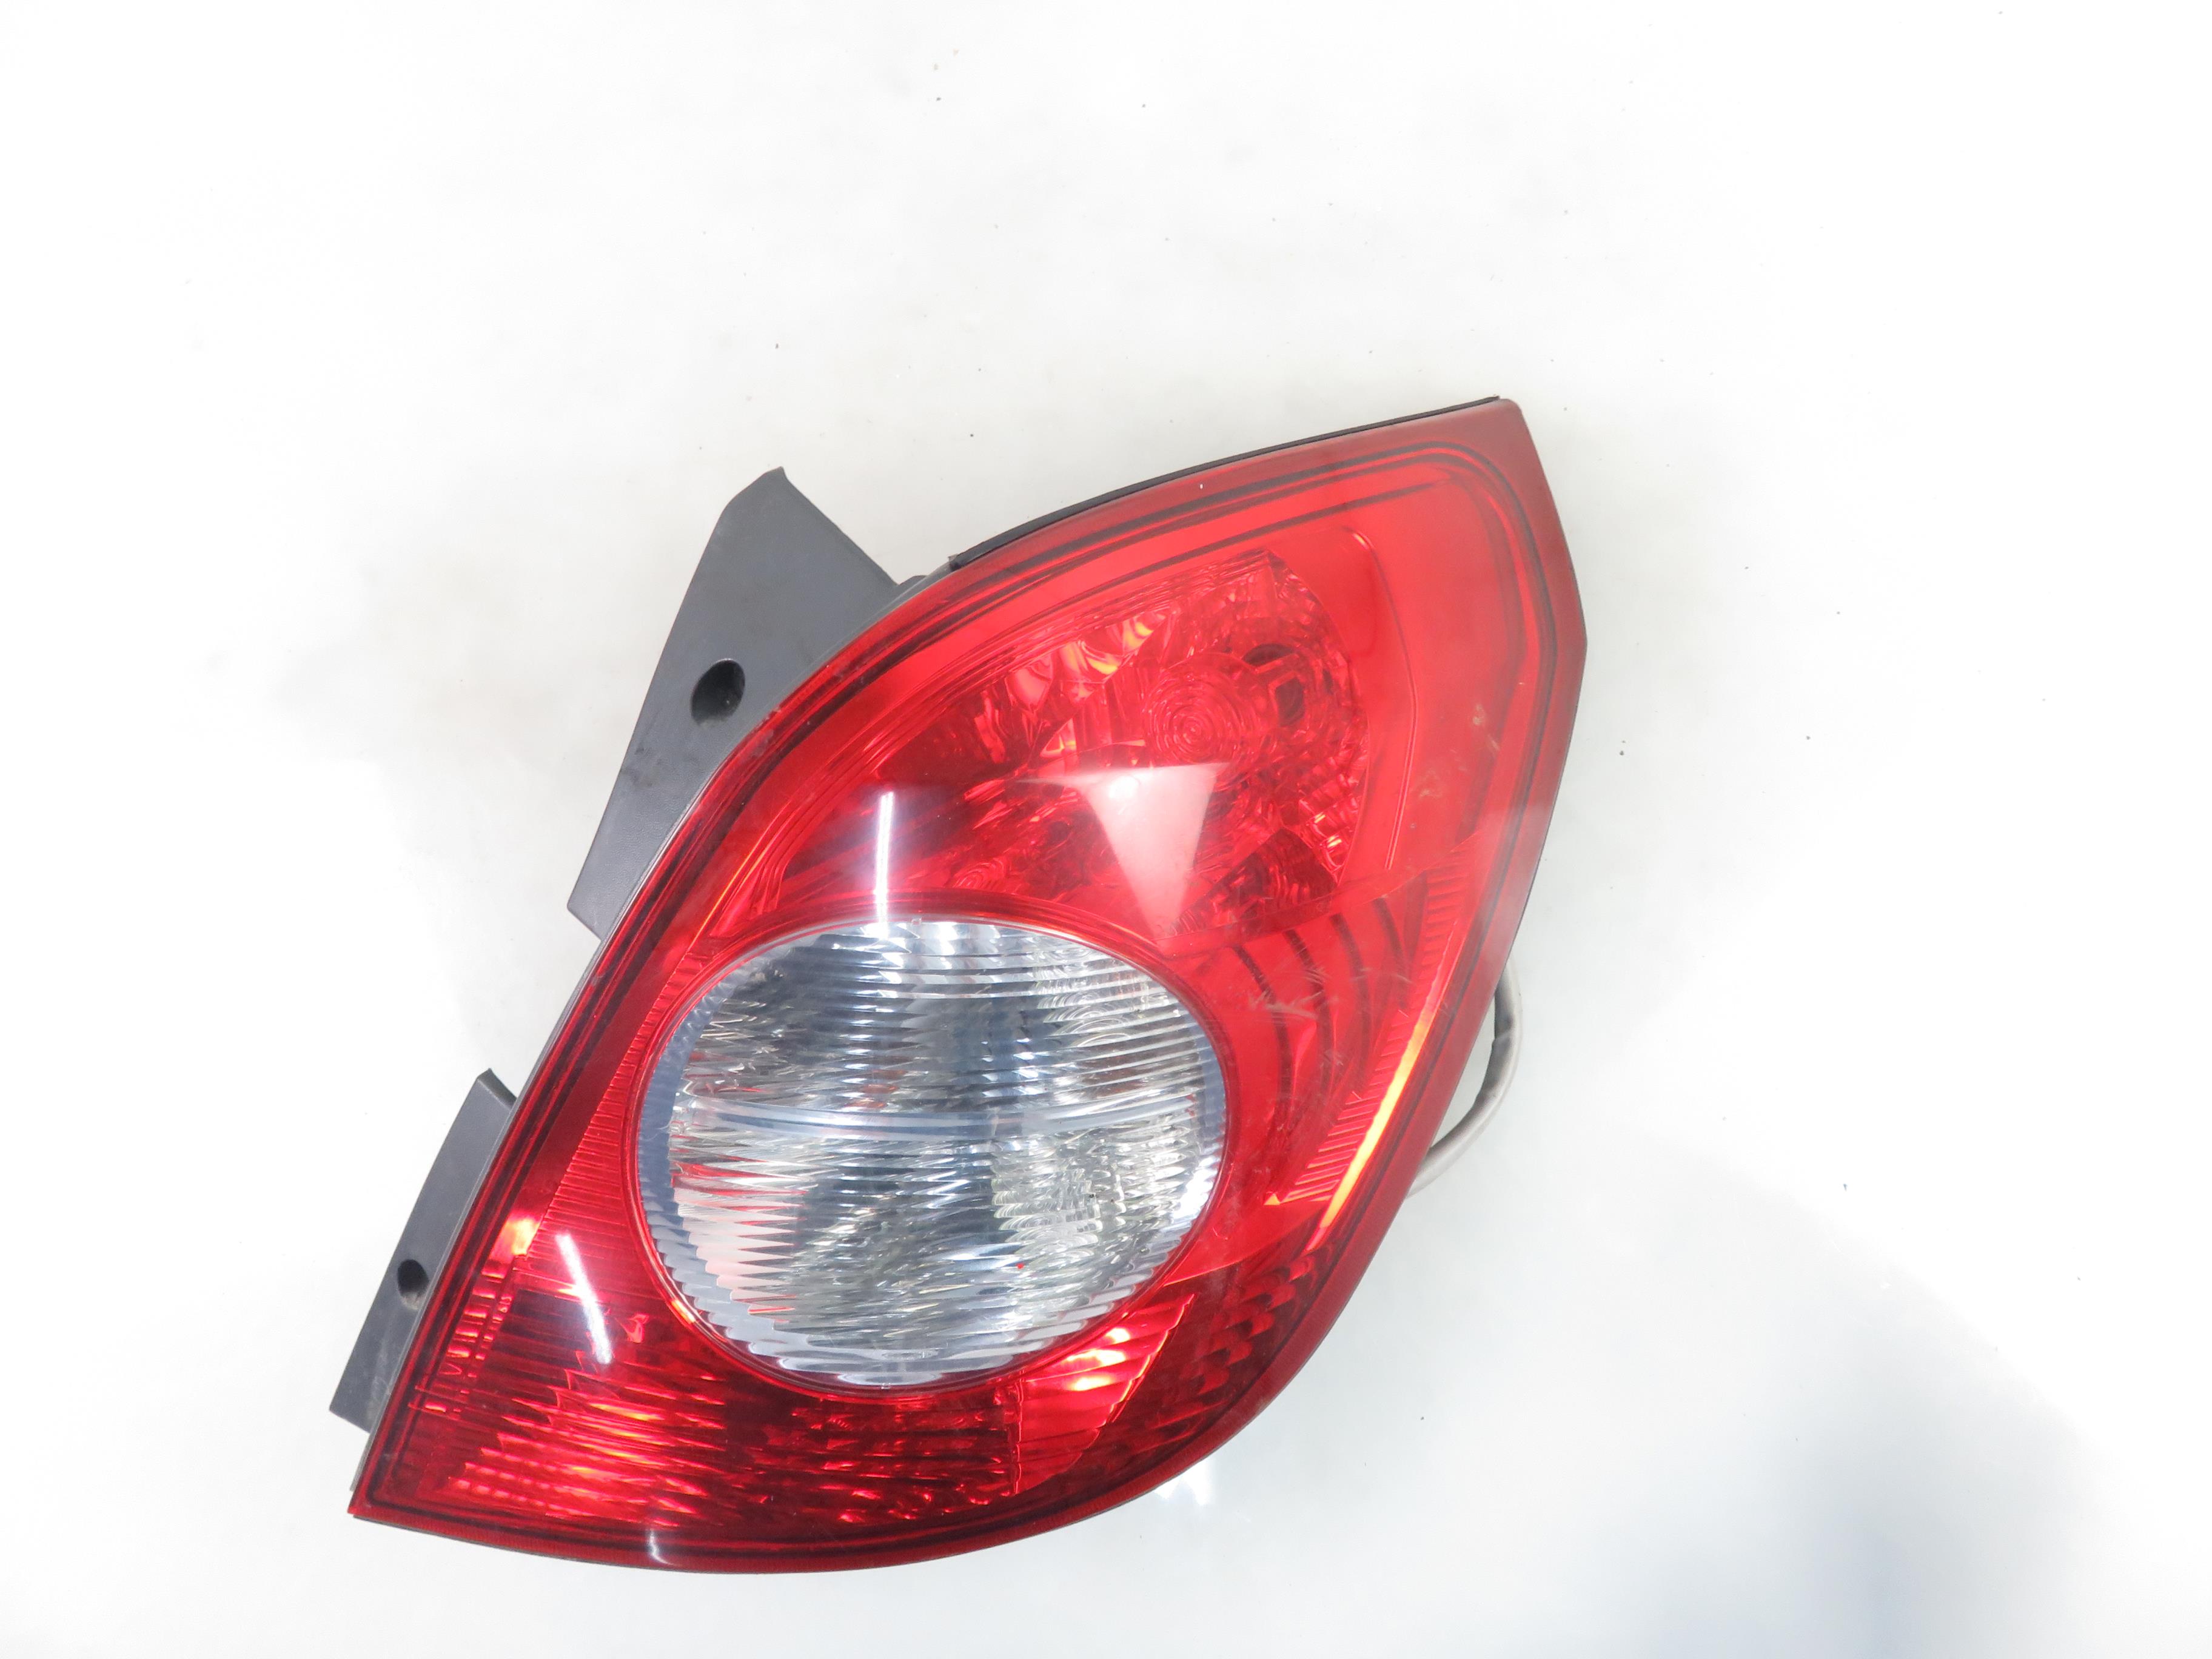 OPEL Antara 1 generation (2006-2015) Rear Right Taillight Lamp 25105097